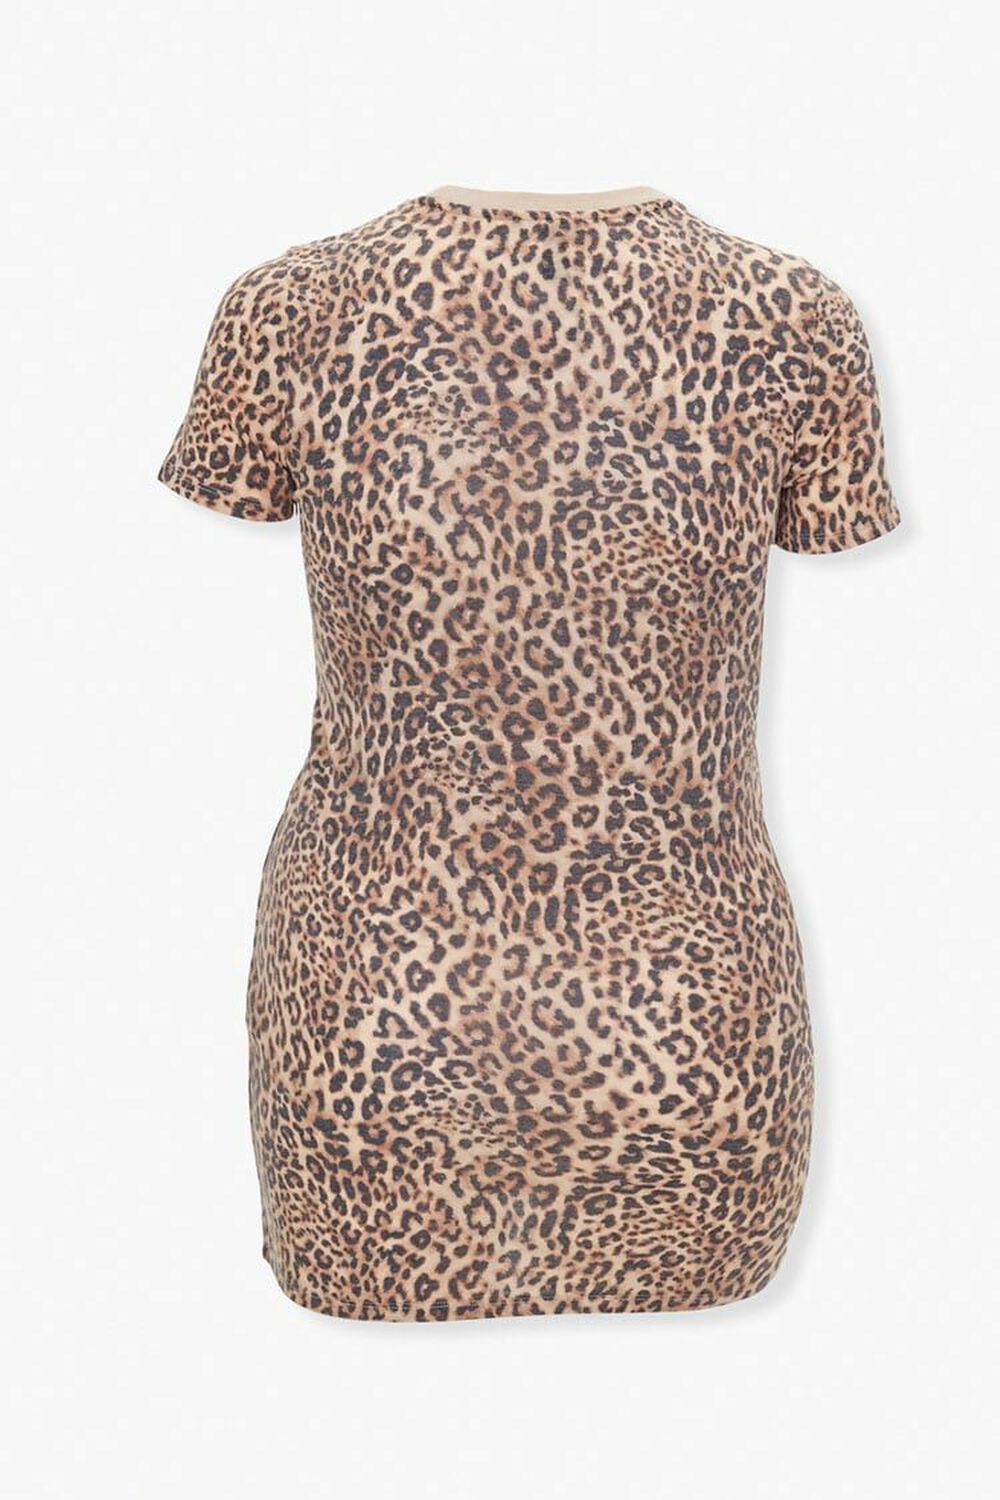 TAN/BLACK Leopard Print T-Shirt Dress, image 2